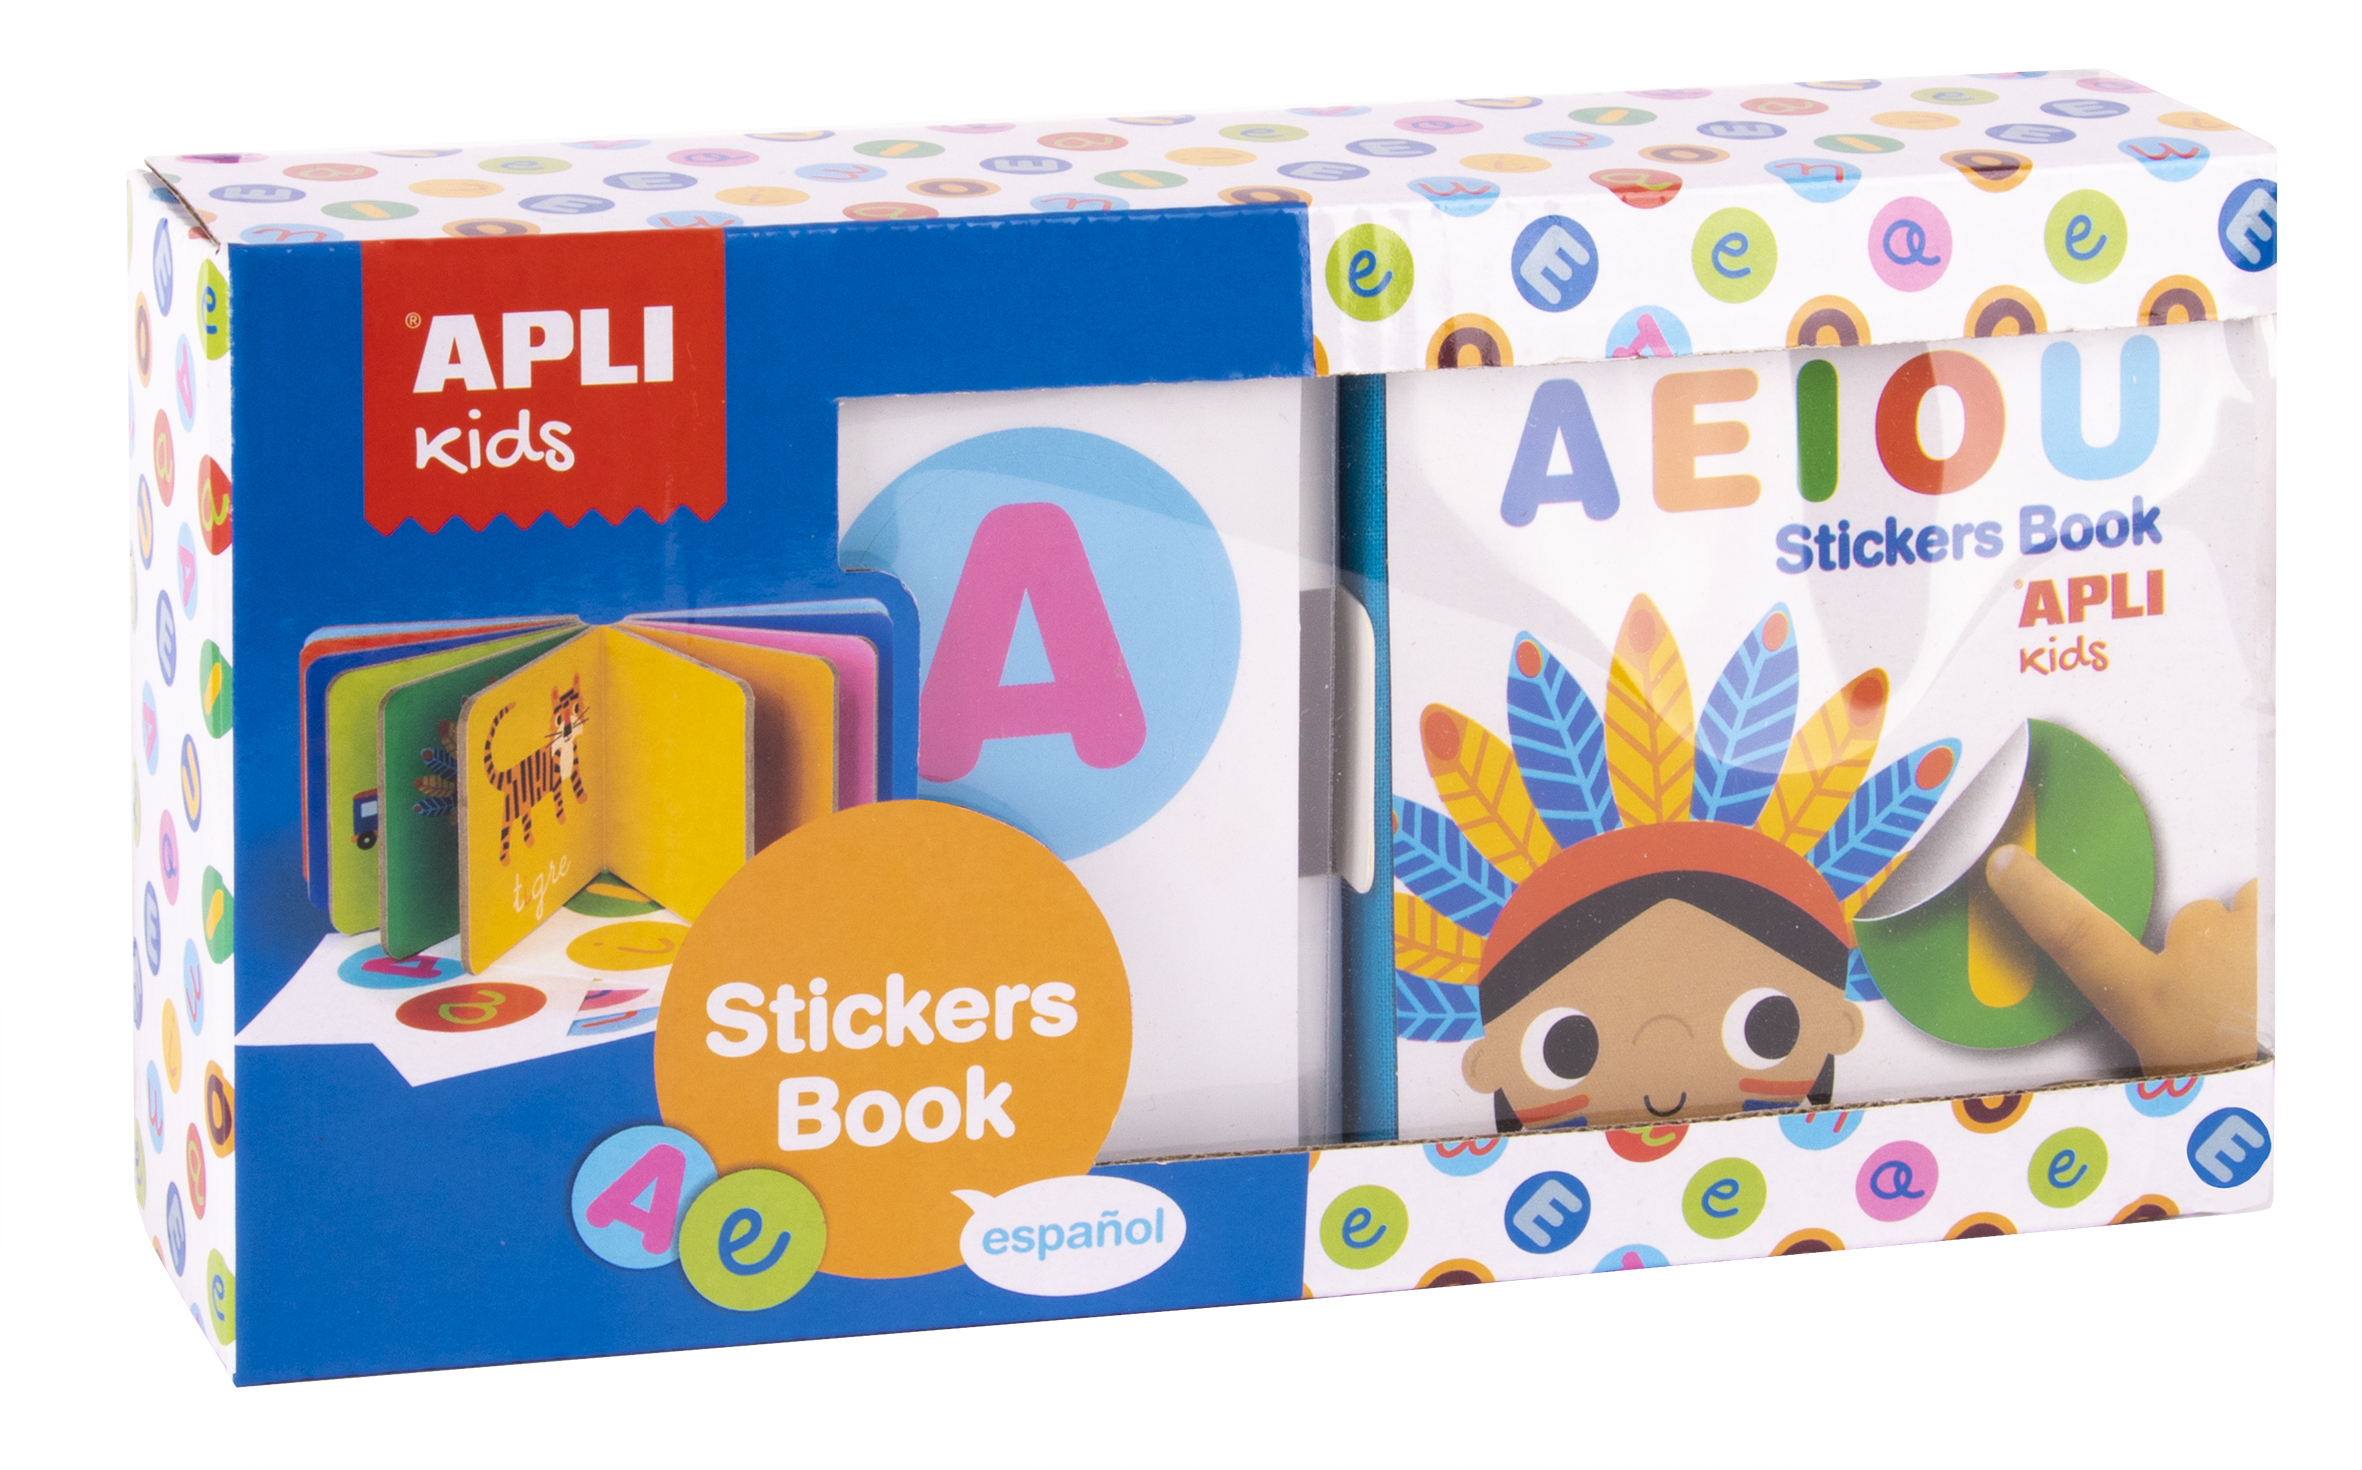 Apli Kids Pack de Manualidades con Pompones, Formas de Goma EVA, Piedras  Fantasia Adhesivas, Lentejuelas, Palos